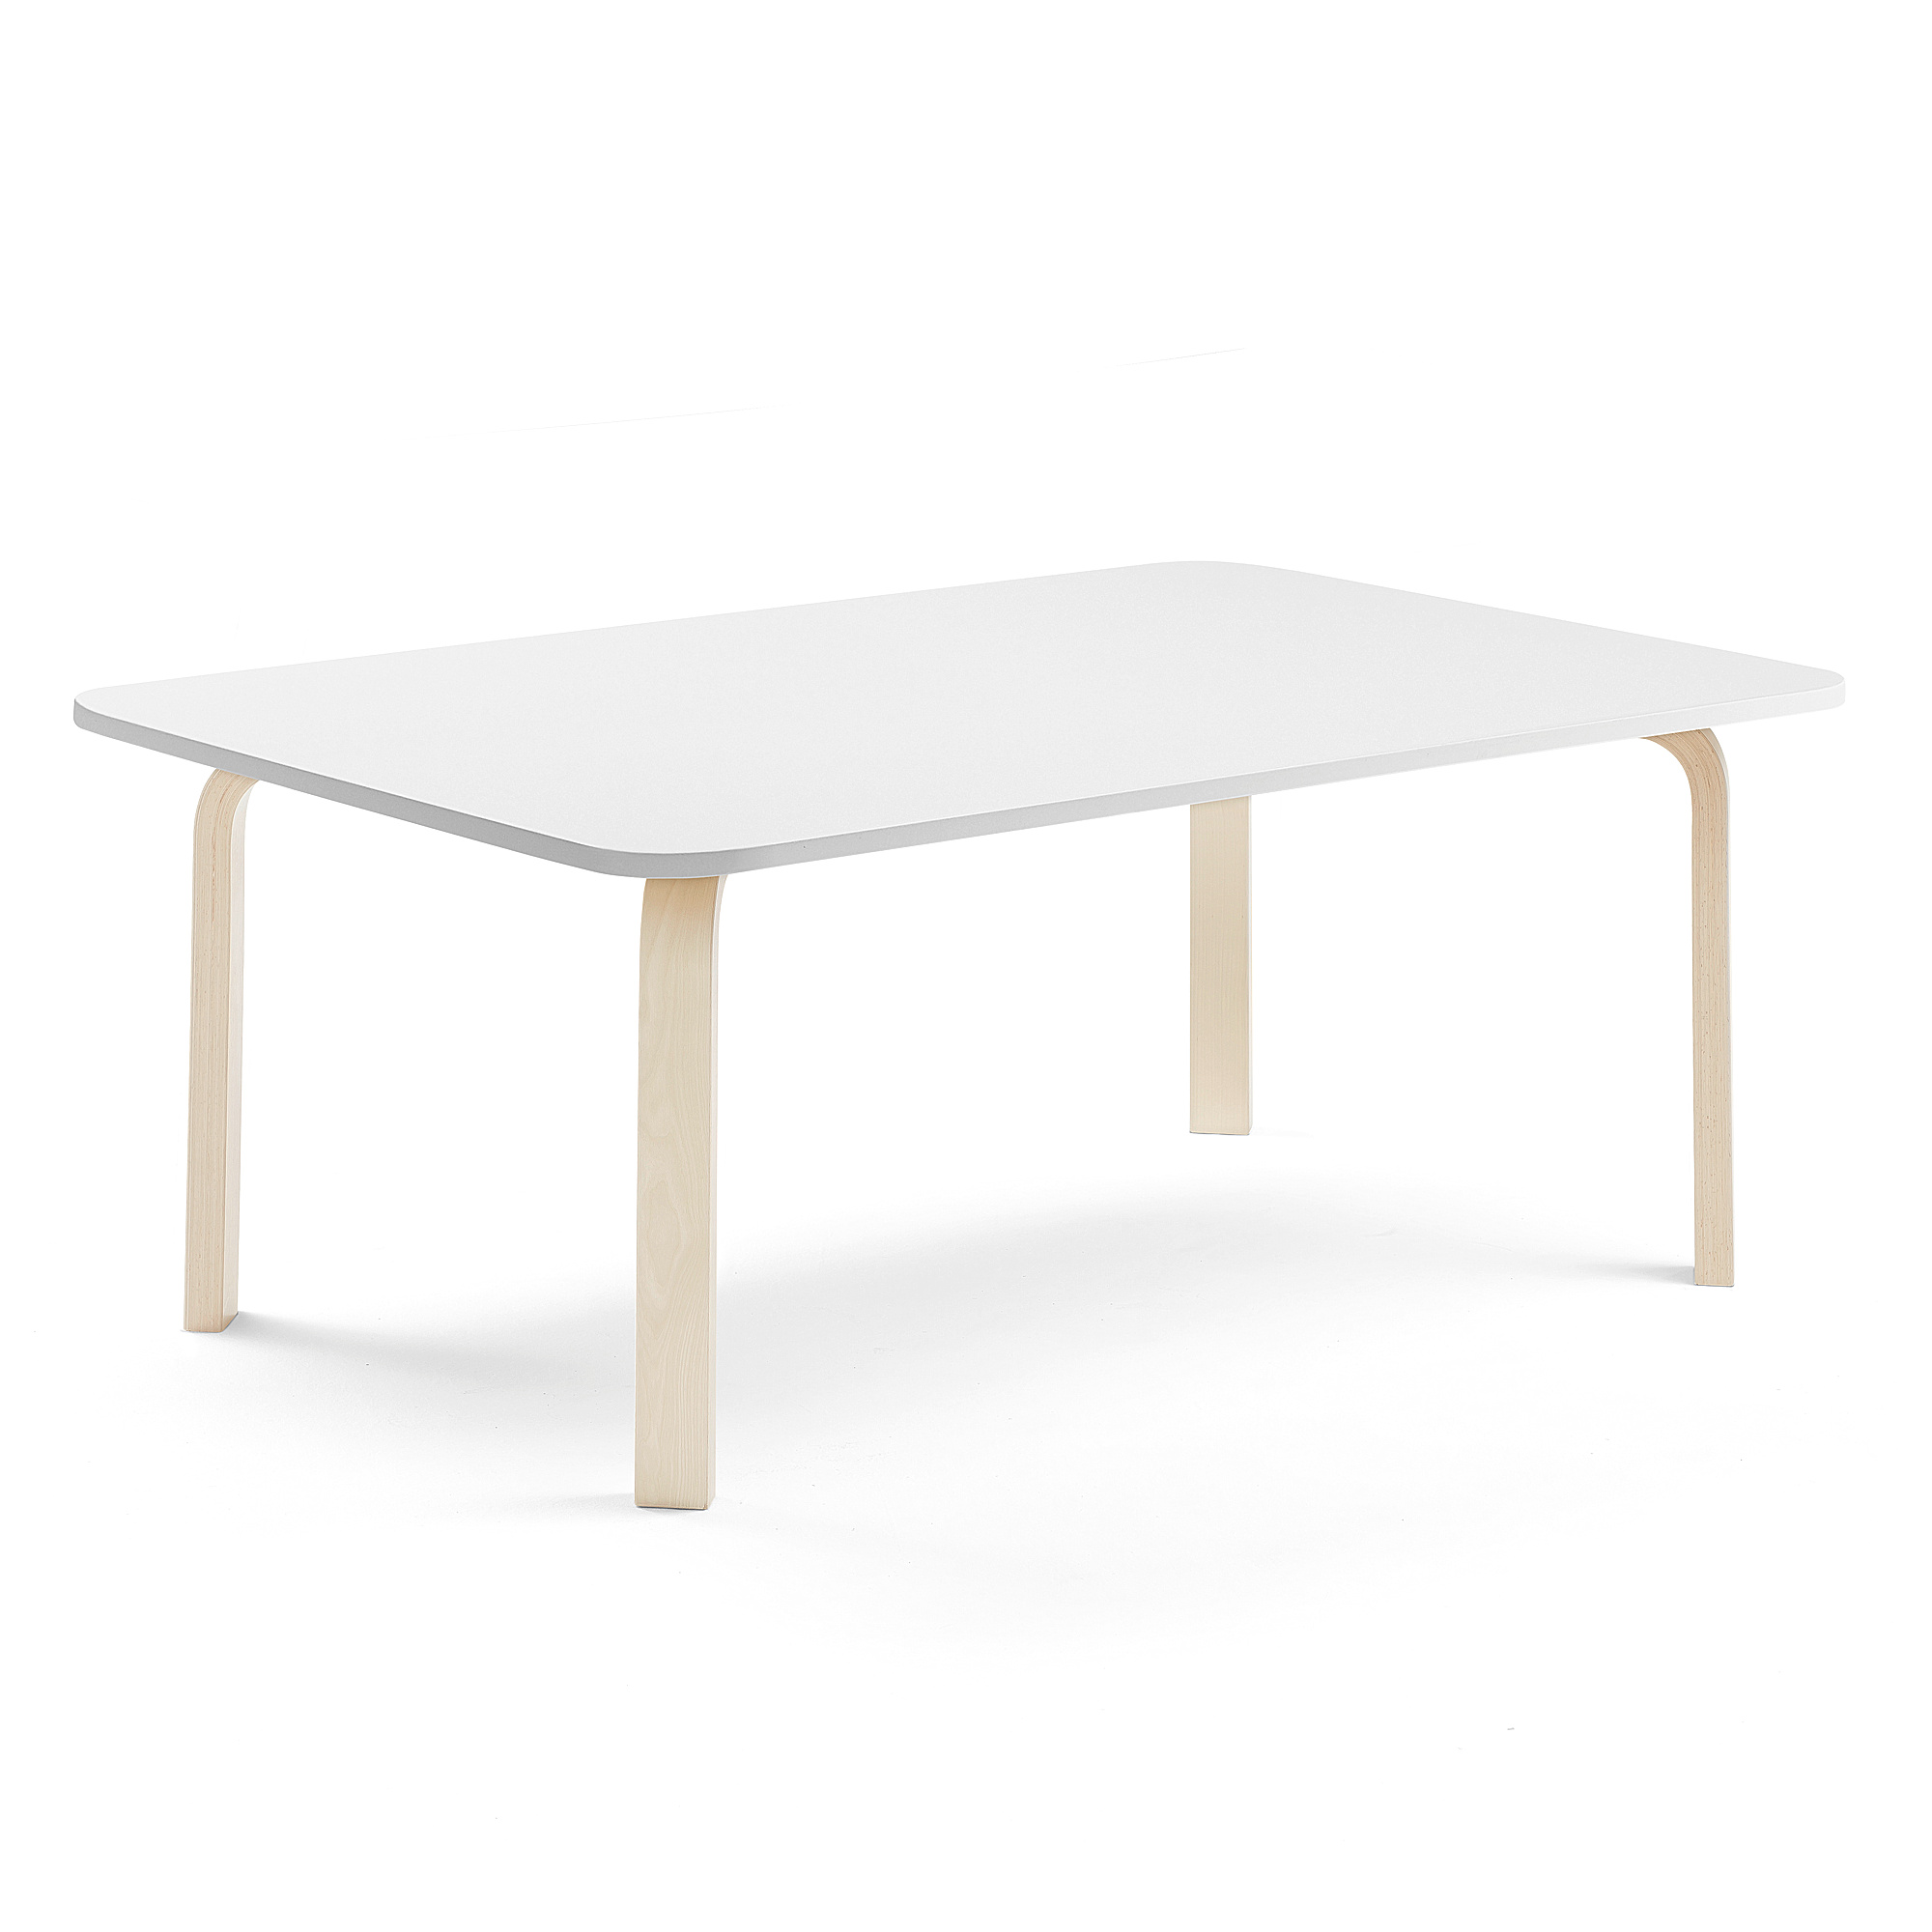 Stůl ELTON, 1800x700x530 mm, bříza, akustická HPL deska, bílá